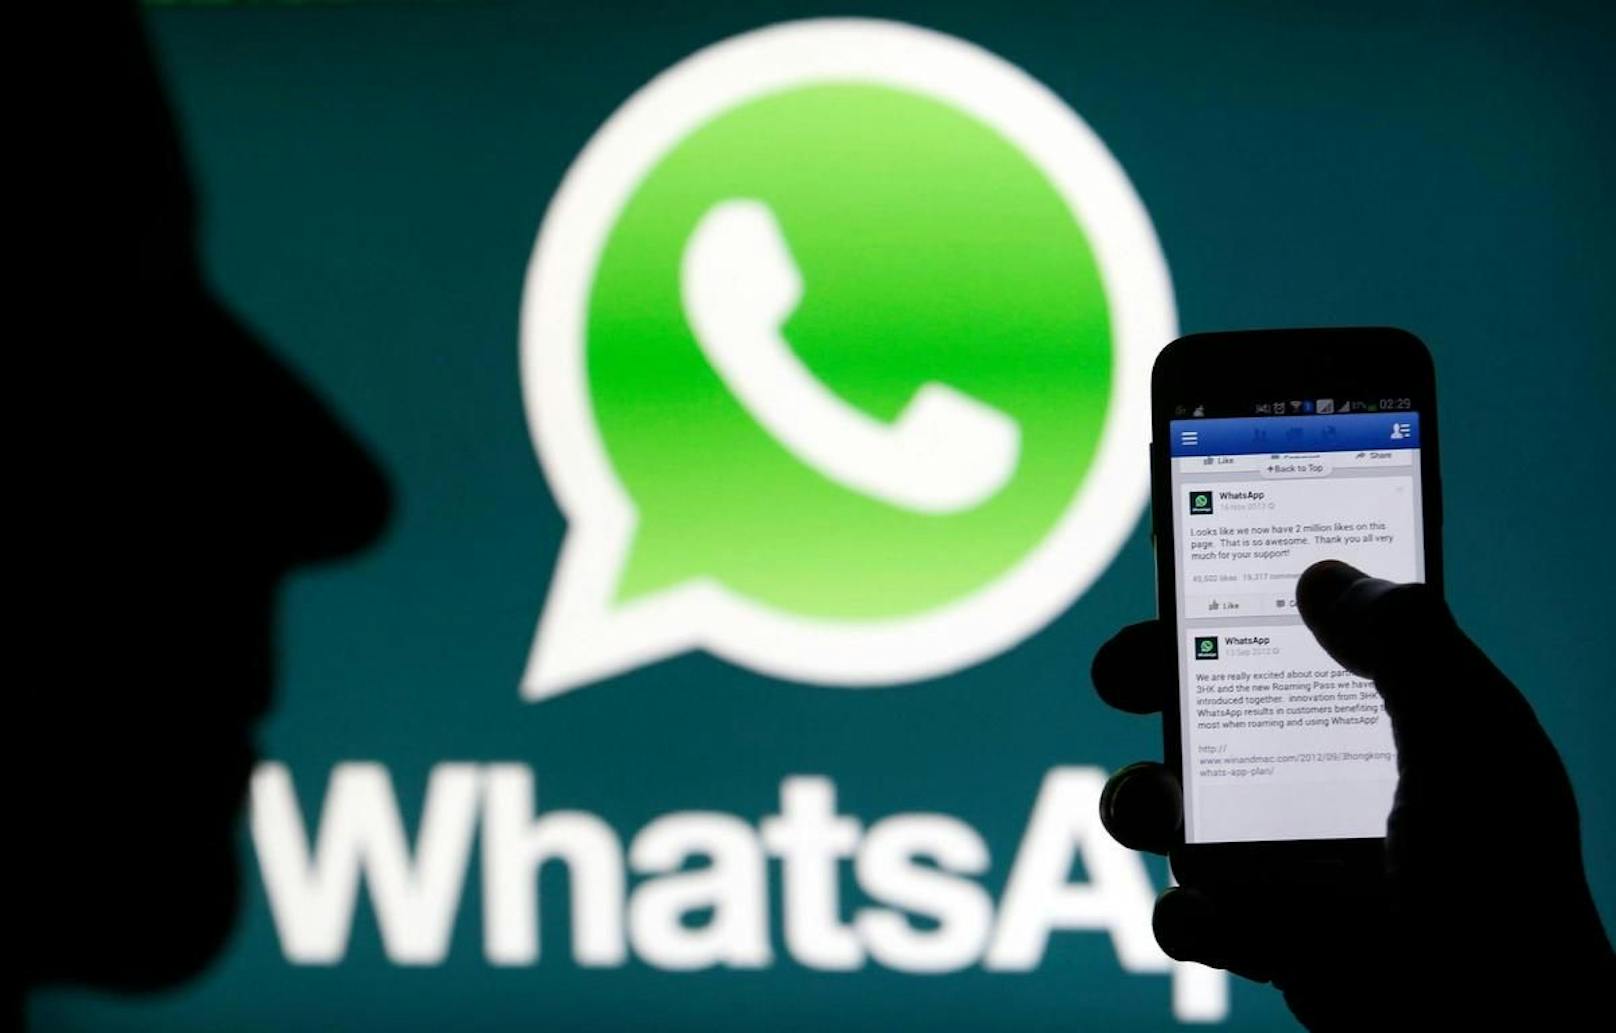 Dies geht entgegen den Versprechen des Unternehmens, dass Whatsapp absolut privat ist.